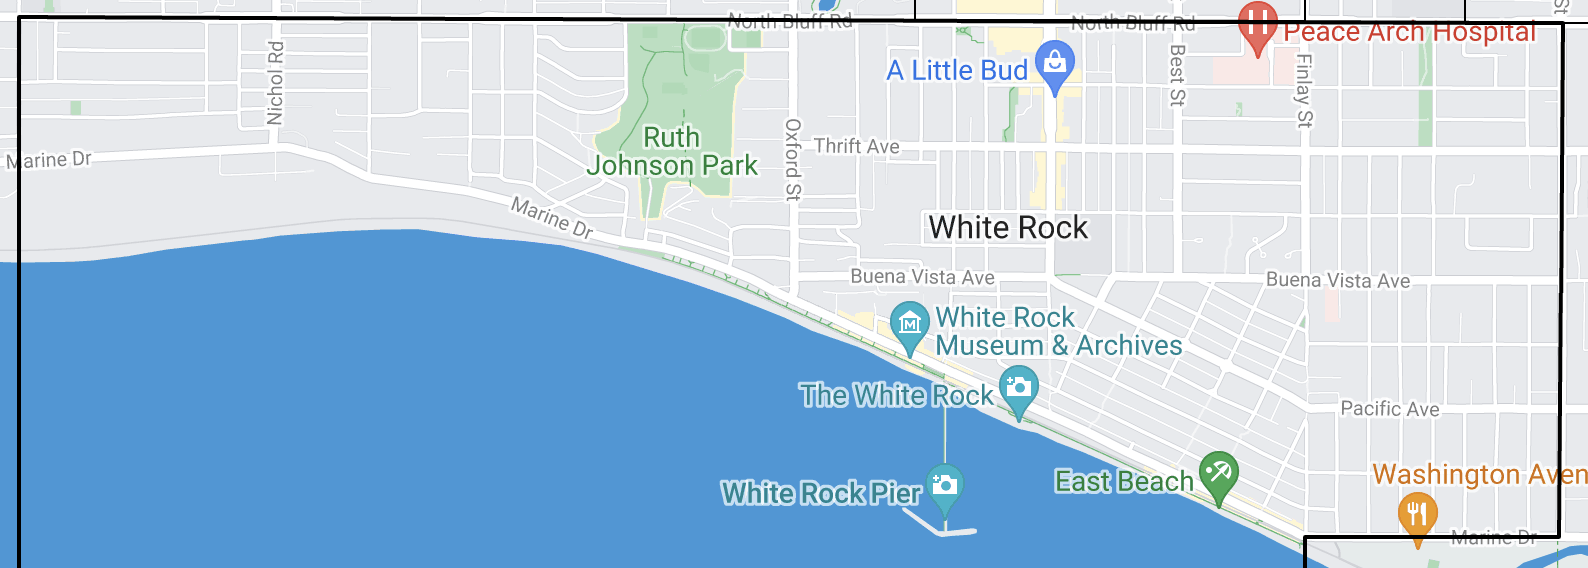 White Rock map